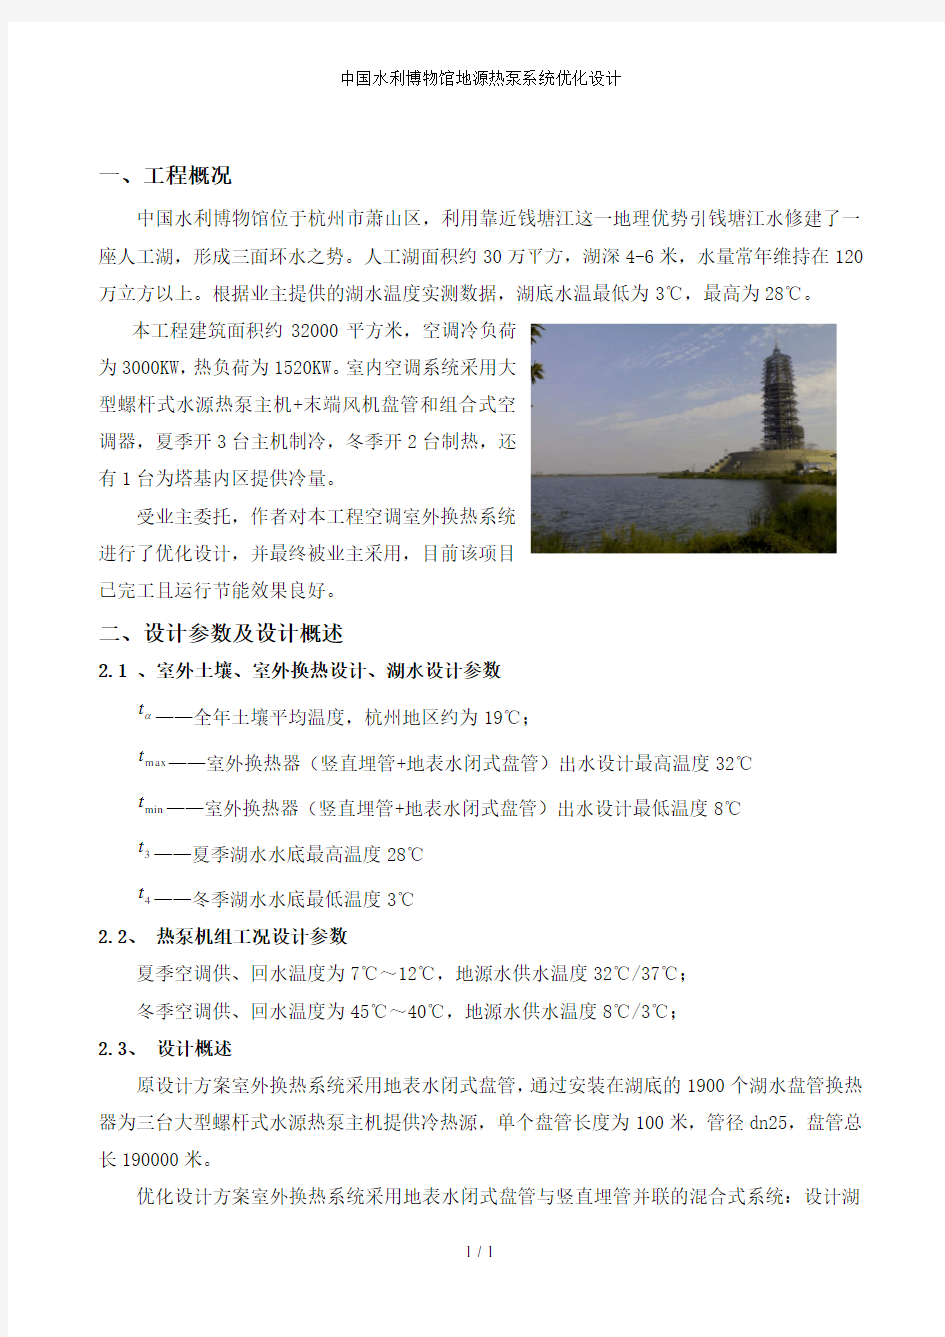 中国水利博物馆地源热泵系统优化设计